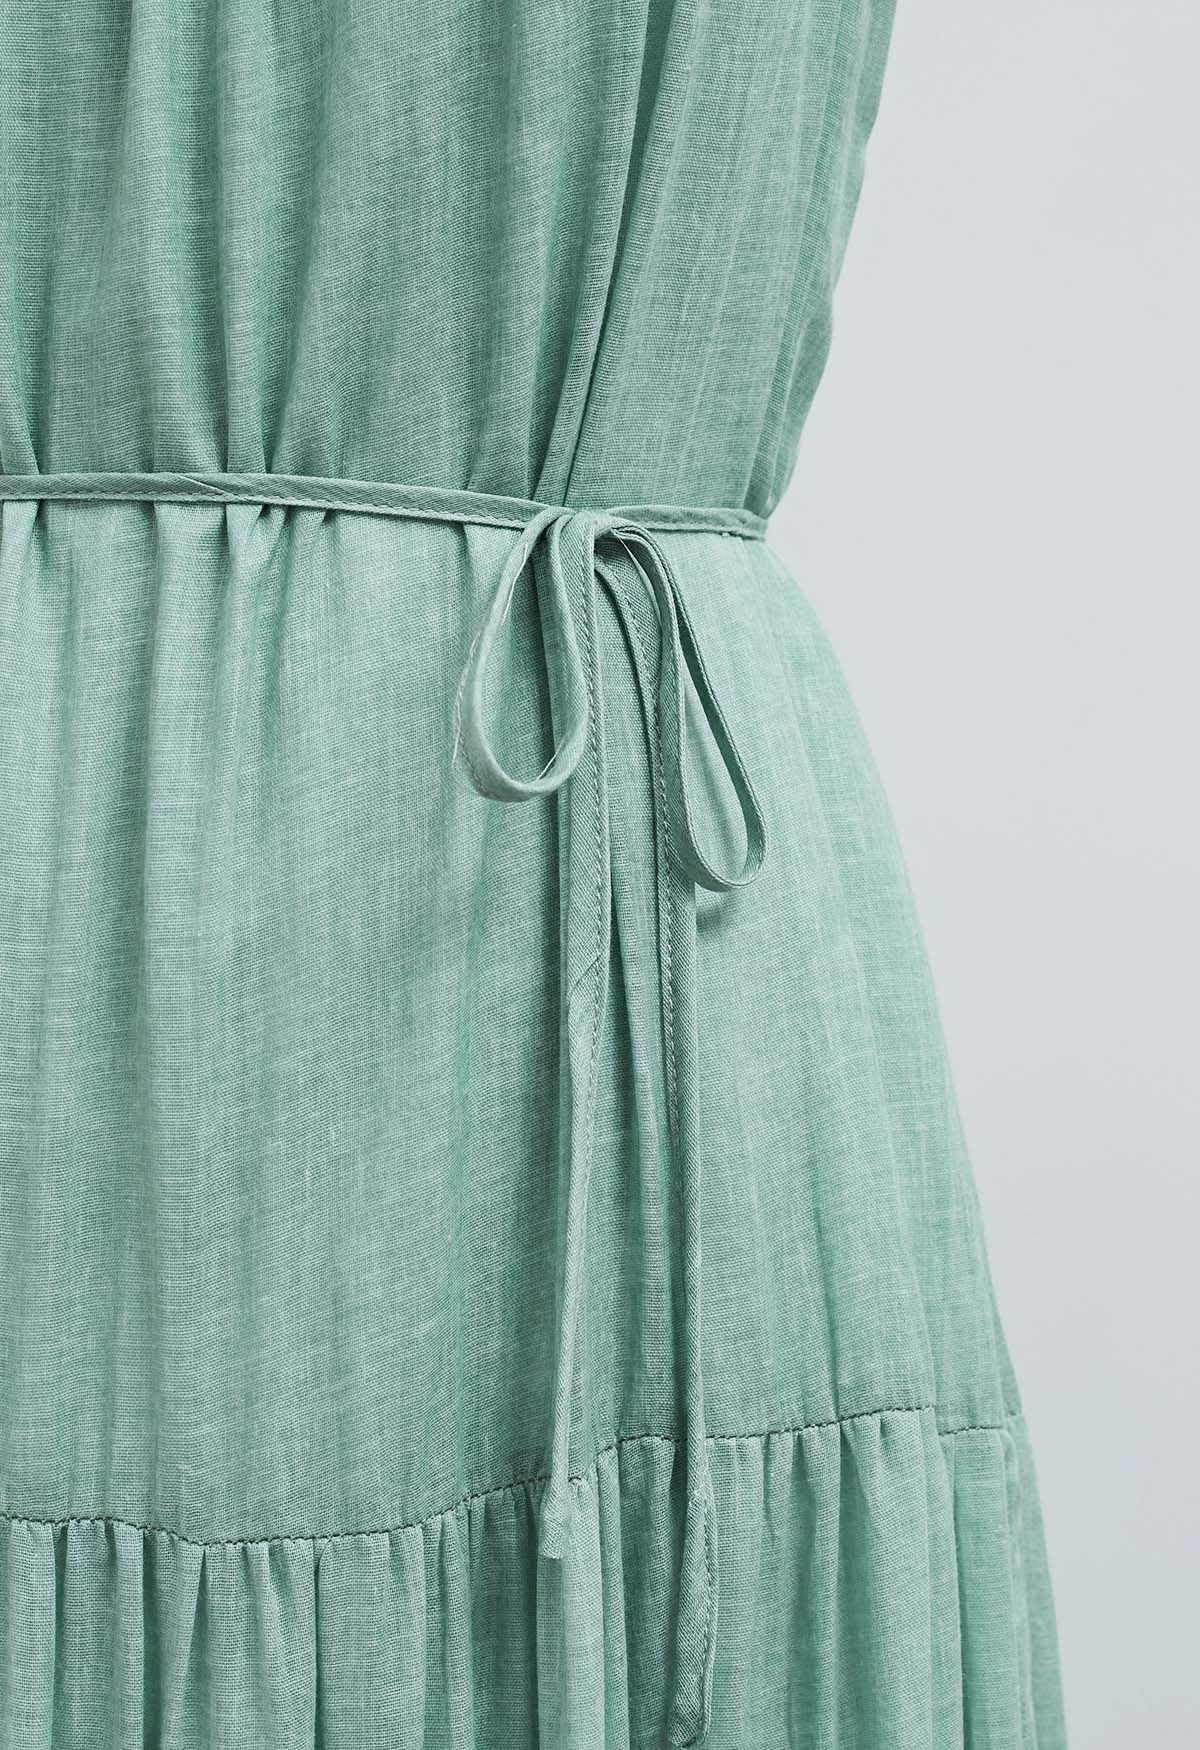 Beaded Tie-Neck Halter Dress in Pea Green